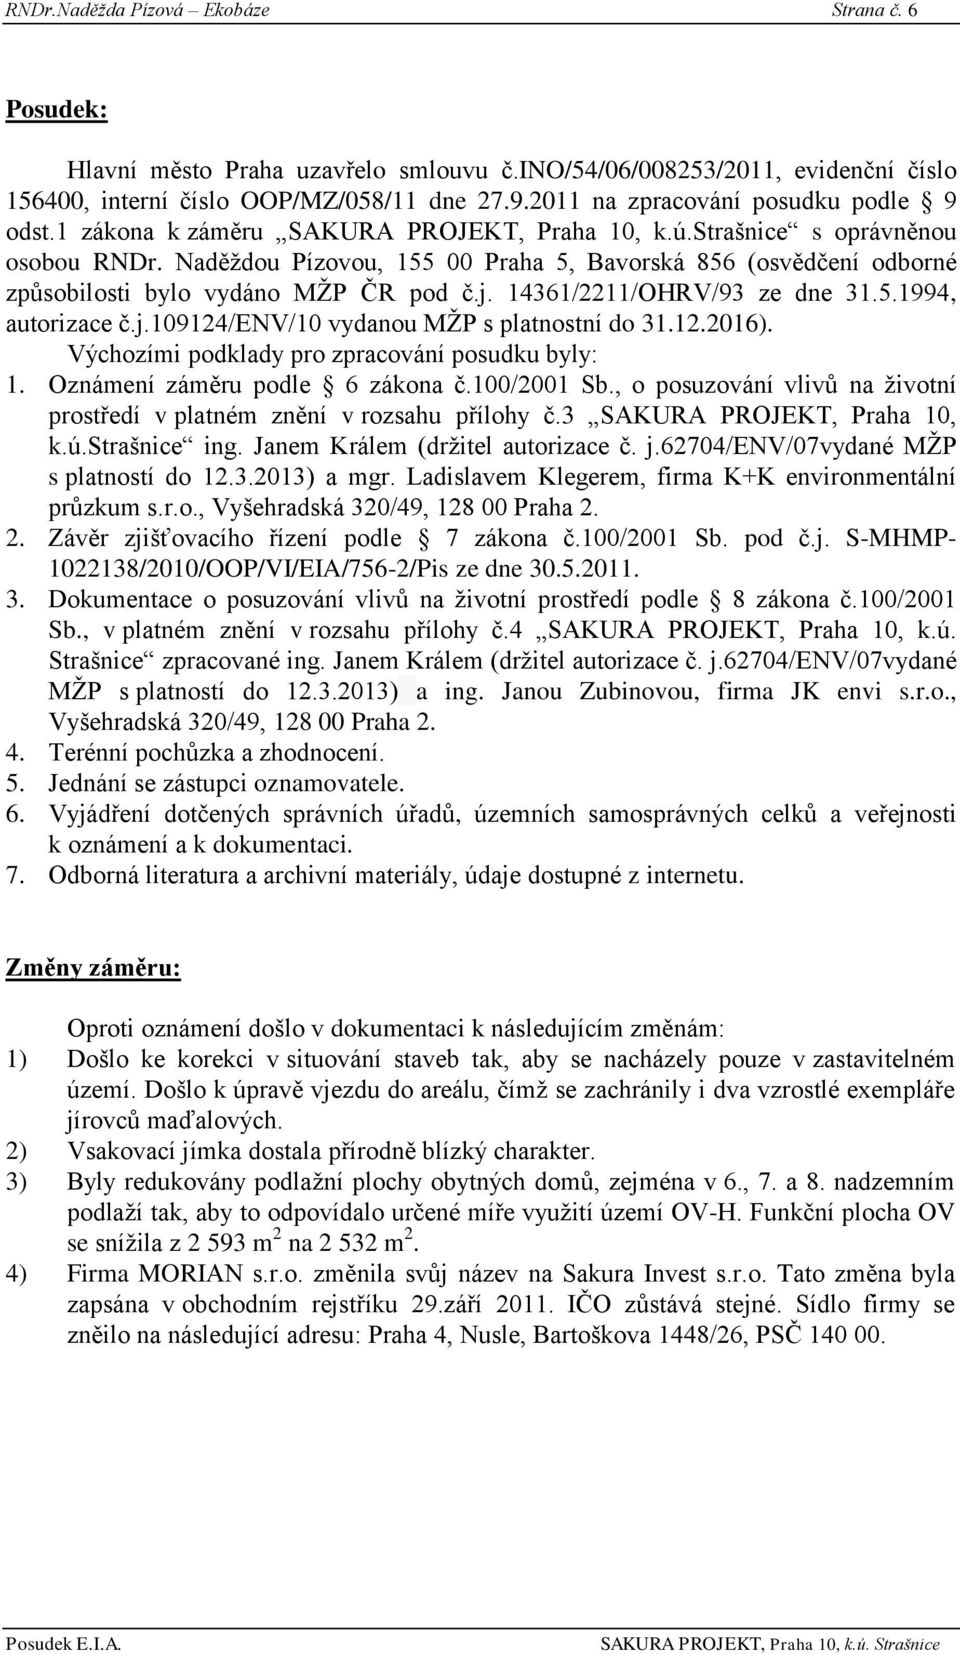 Naděţdou Pízovou, 155 00 Praha 5, Bavorská 856 (osvědčení odborné způsobilosti bylo vydáno MŢP ČR pod č.j. 14361/2211/OHRV/93 ze dne 31.5.1994, autorizace č.j.109124/env/10 vydanou MŢP s platnostní do 31.